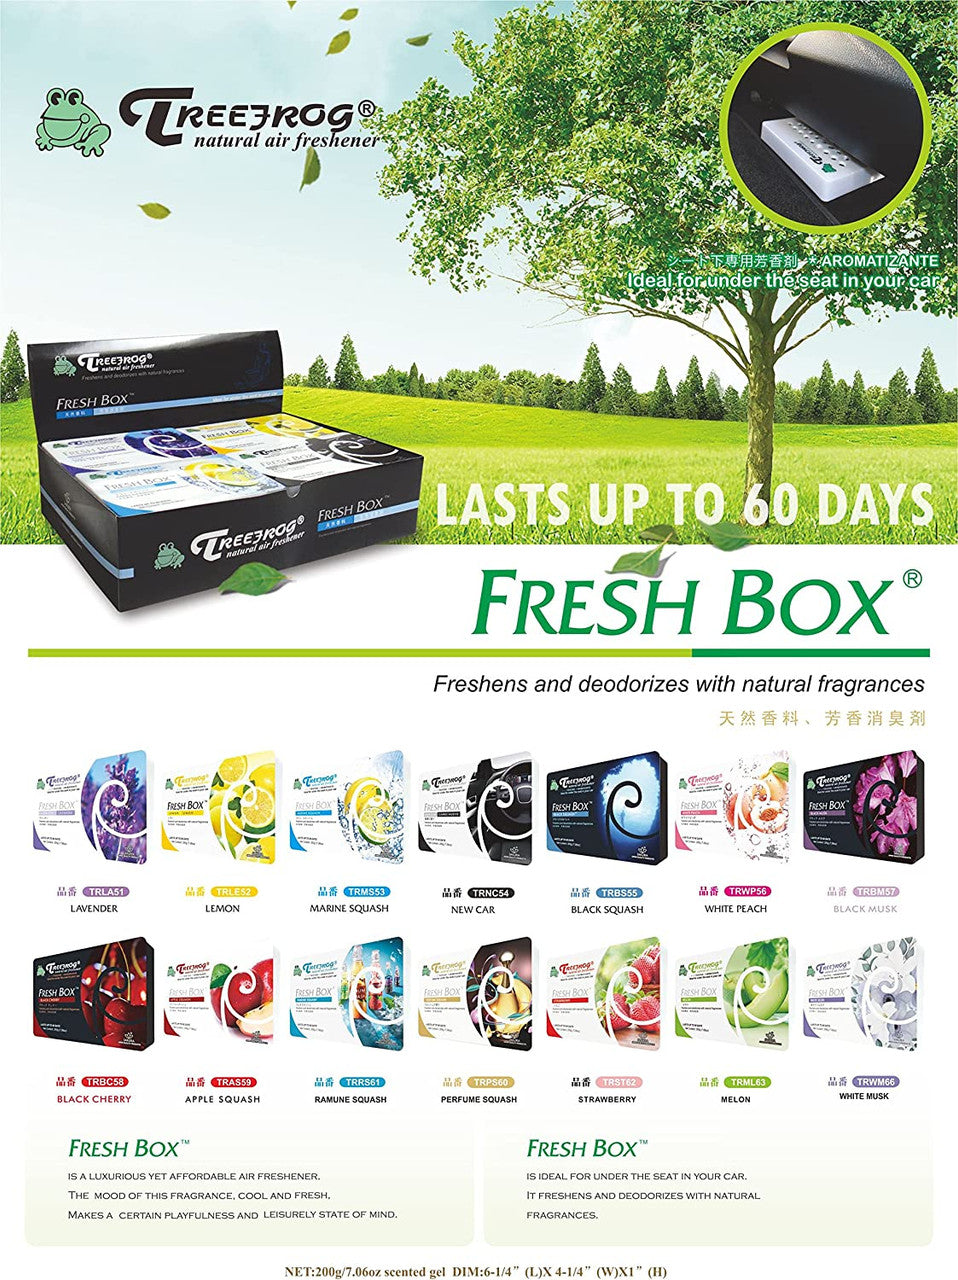 Treefrog Fresh Box Black Squash x2 and Black Musk x2 Packs